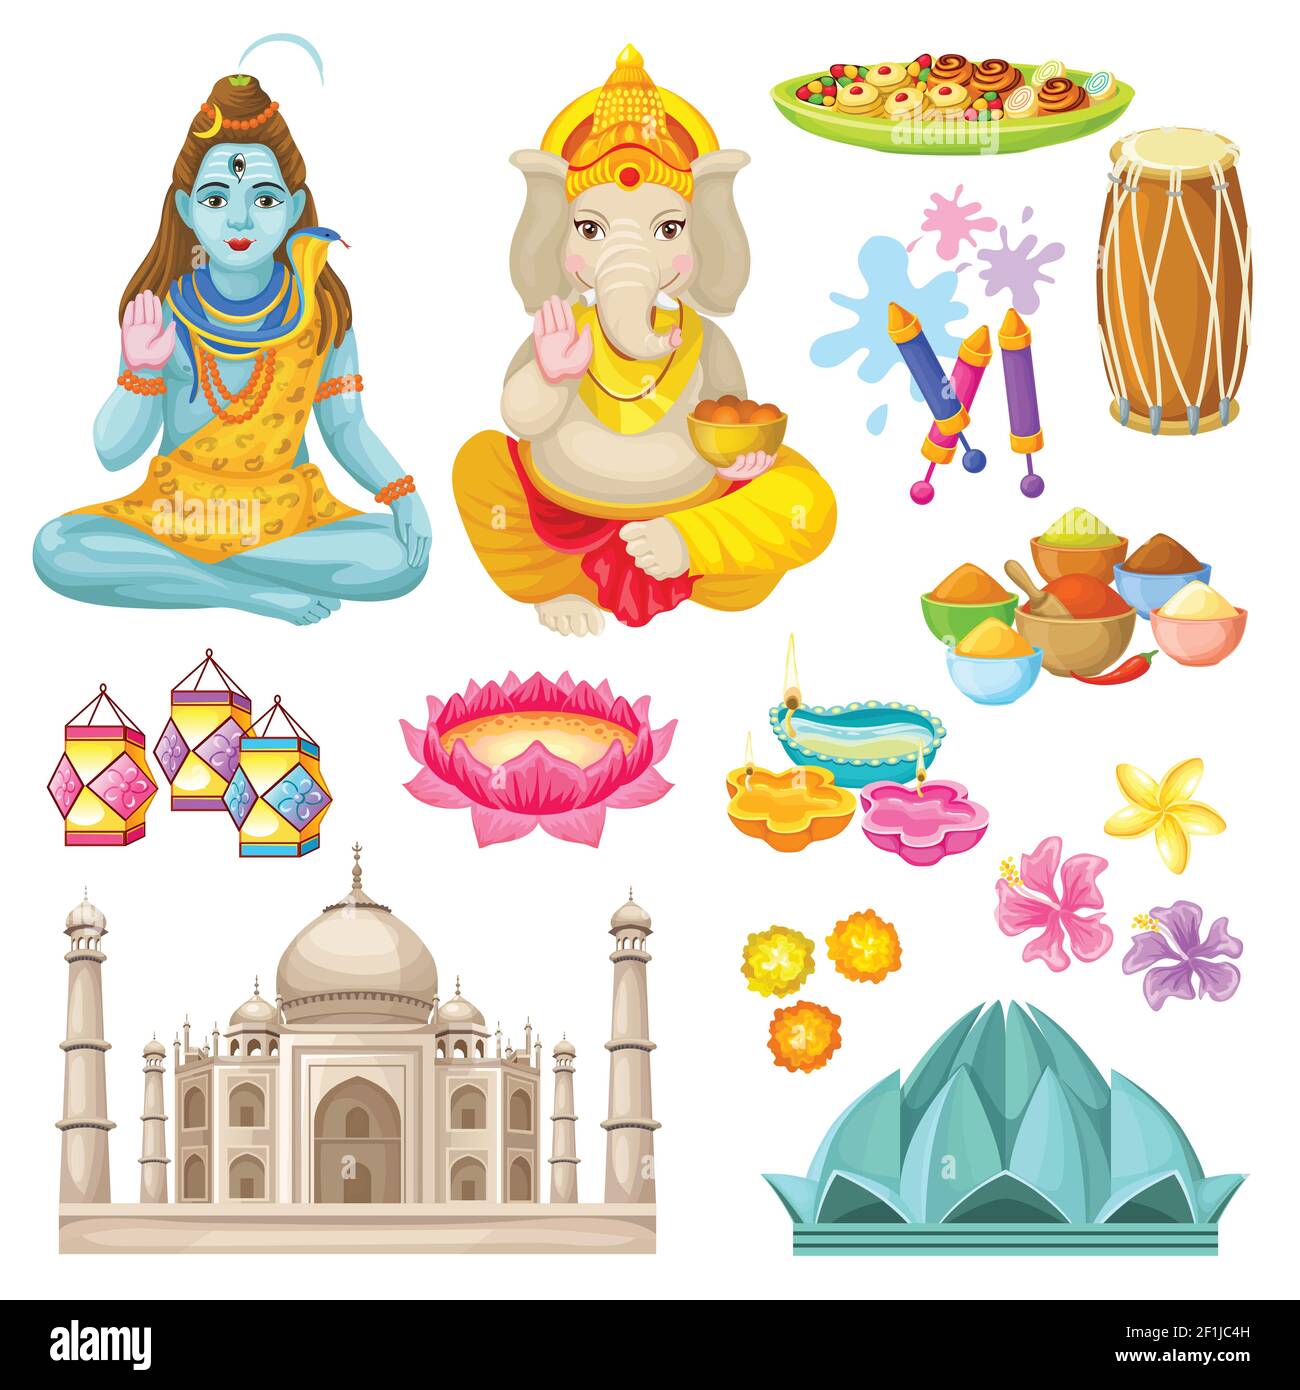 Farbenfrohe indische Kulturelemente mit Shiva Ganesha Gods Süßigkeiten Laternen diya Gebäude Gewürze Feuerwerk Trommeln Blumen isoliert Vektor illustratio Stock Vektor